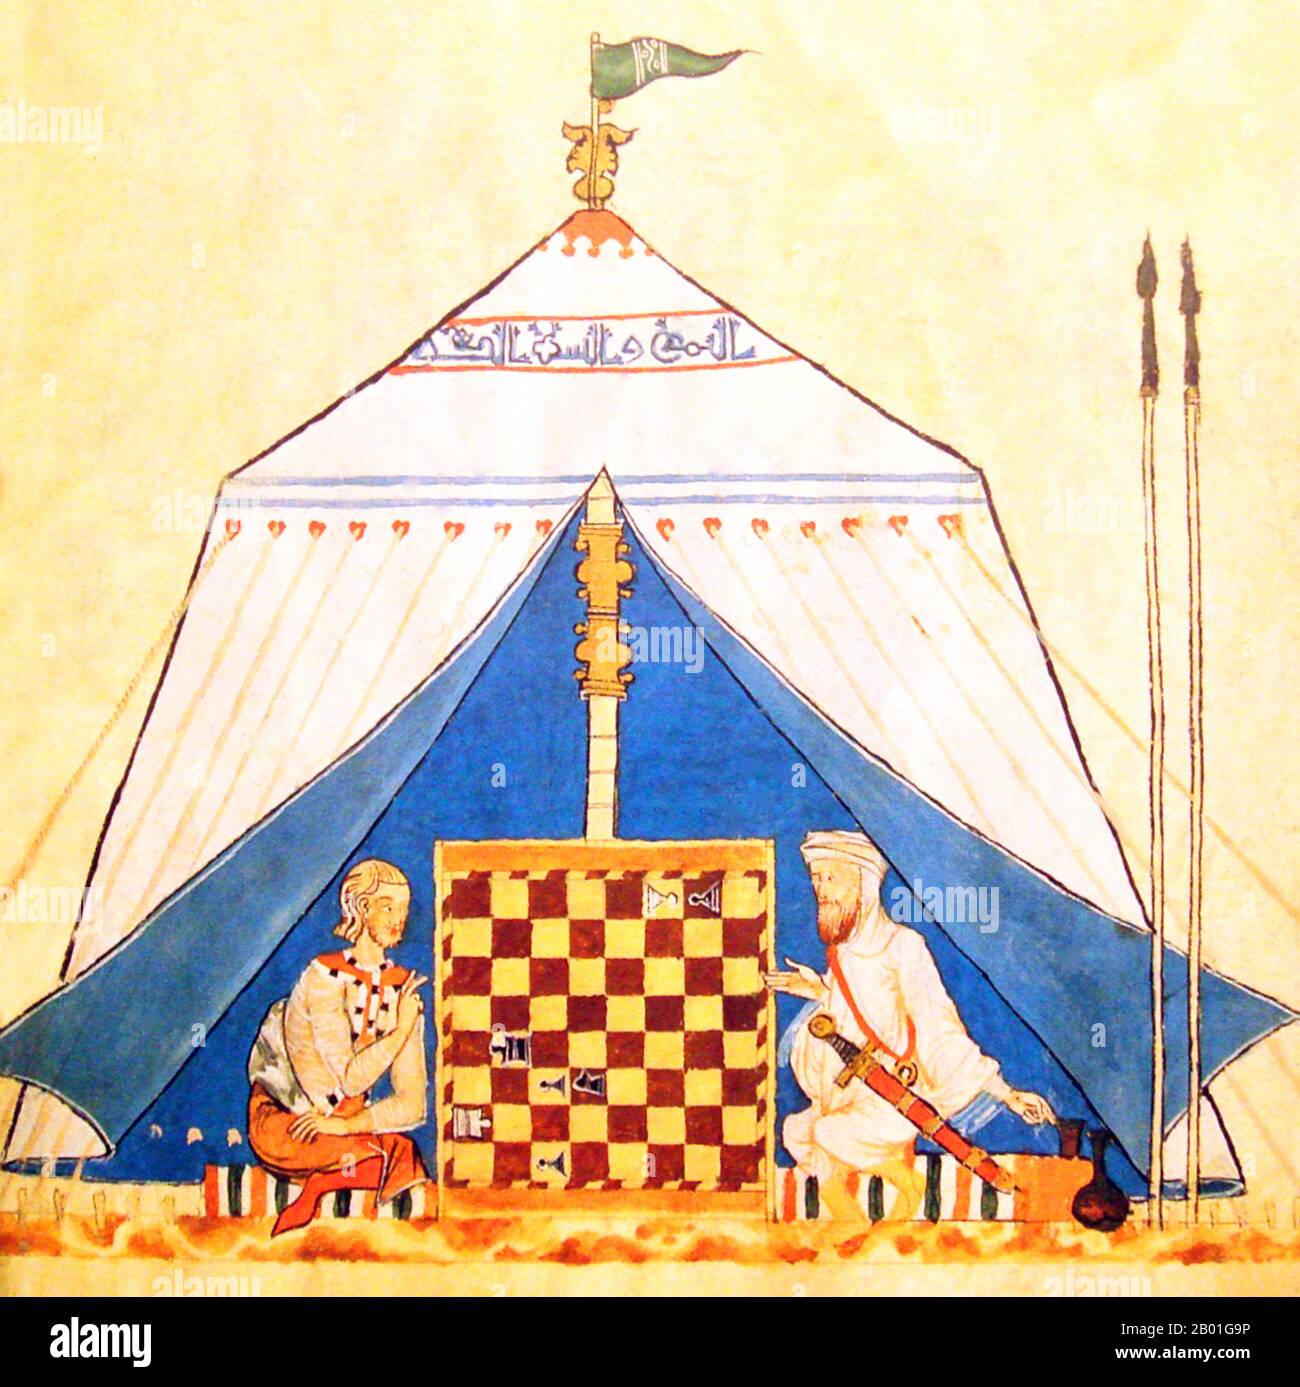 Spanien/Al-Andalus: Ein Christ und ein Muslim, die Schach spielen, aus dem Buch der Spiele, Würfel und Tische, Alfonso X aus Kastilien (r. 1252-1284), c.. 1251-1283. Al-Andalus war der arabische Name einer Nation und einer Territorialregion, die gemeinhin auch als maurische Iberien bezeichnet wird. Der Name beschreibt Teile der iberischen Halbinsel und Septimanien, die von Muslimen regiert werden (oft unter dem Gattungsnamen „Mauren“), zu verschiedenen Zeiten zwischen 711 und 1492, obwohl die territorialen Grenzen aufgrund der Kriege mit den christlichen Königreichen ständig verändert wurden. Stockfoto